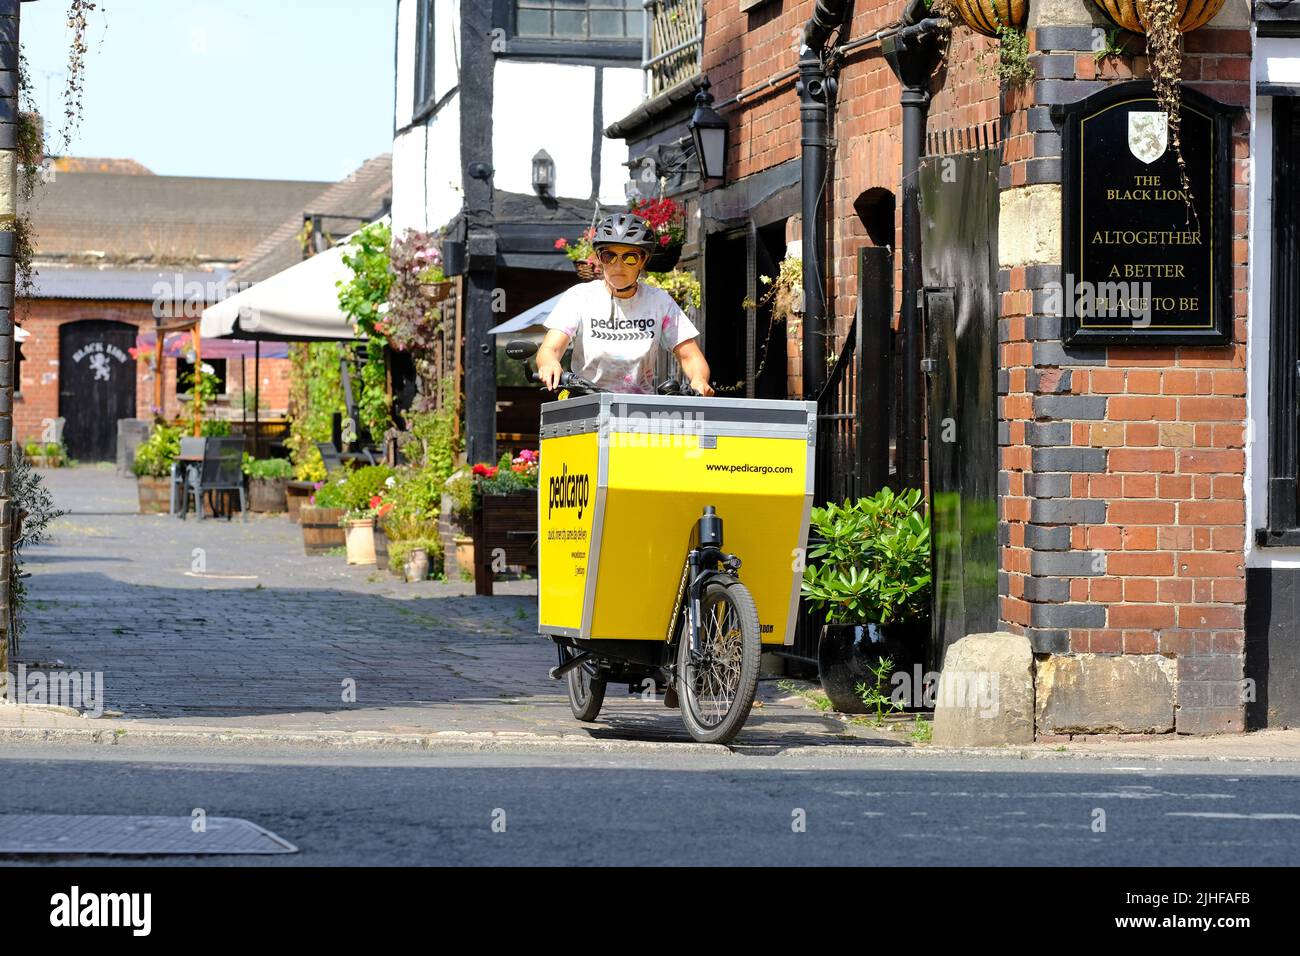 Pedicargo exploite une flotte de vélos tout-cargo autour de Hereford au Royaume-Uni pour les livraisons des entreprises locales et le recyclage des déchets Banque D'Images